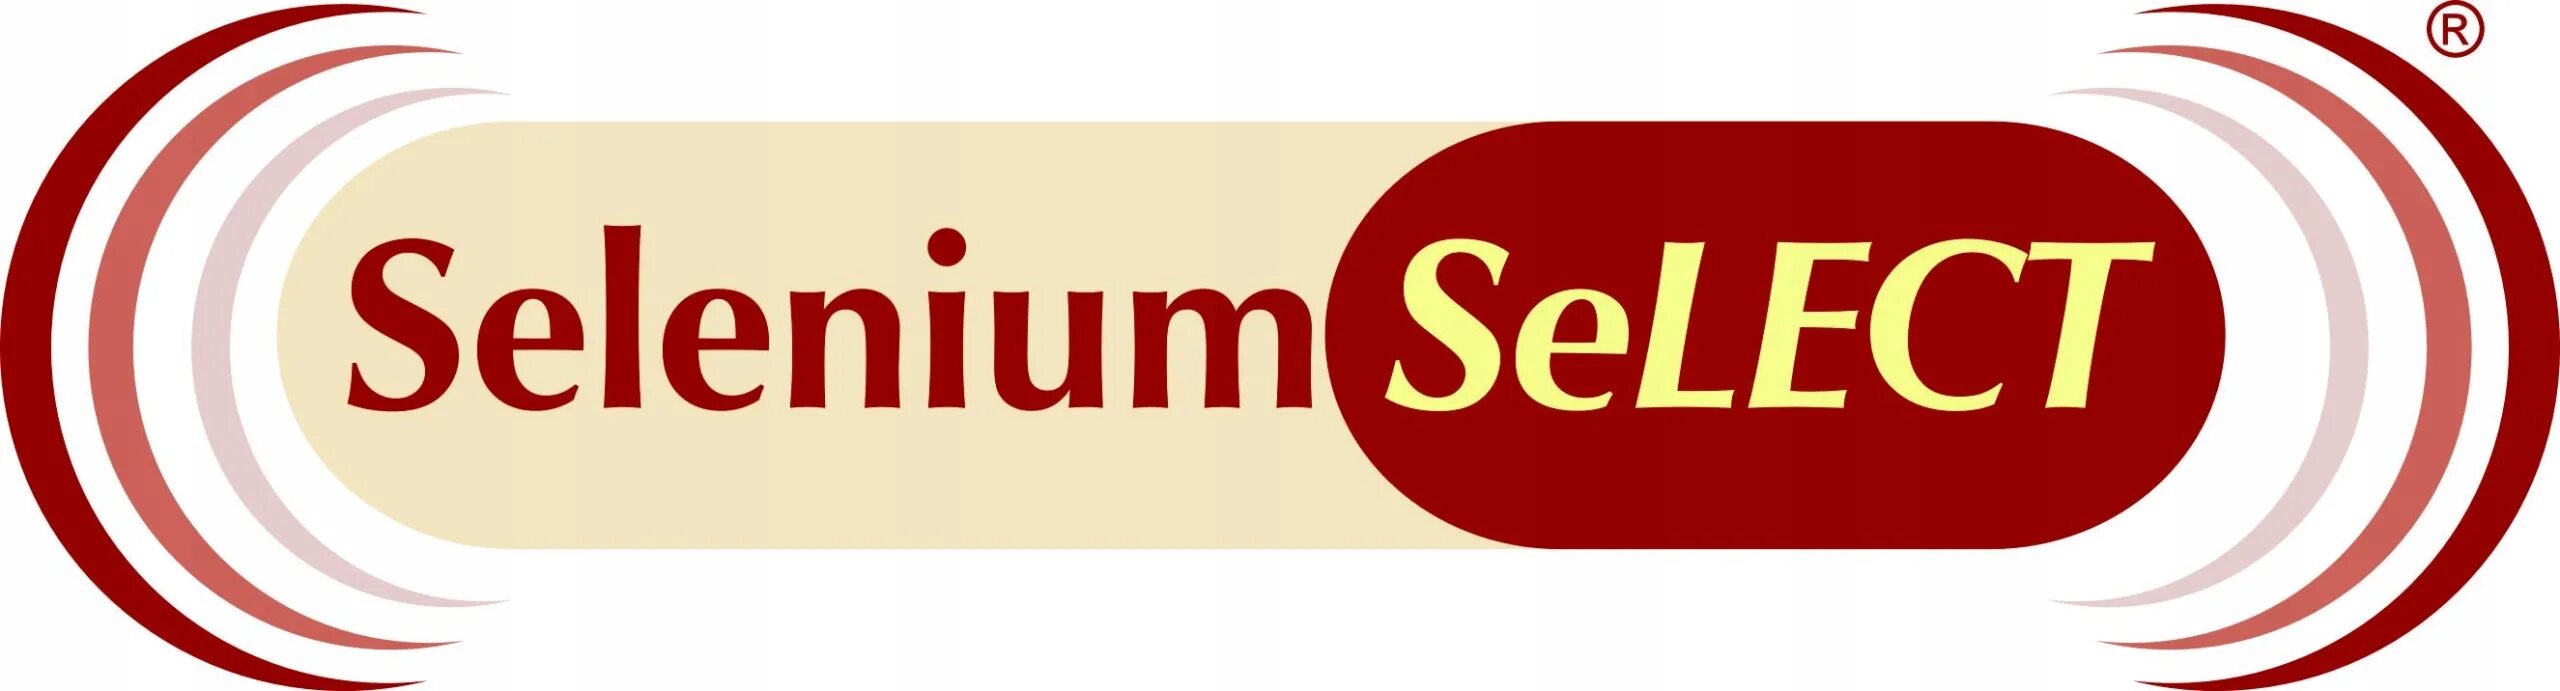 Selenium selectors. Selenium логотип. Selenium logo. Объект select Selenium. Mineralife logo.